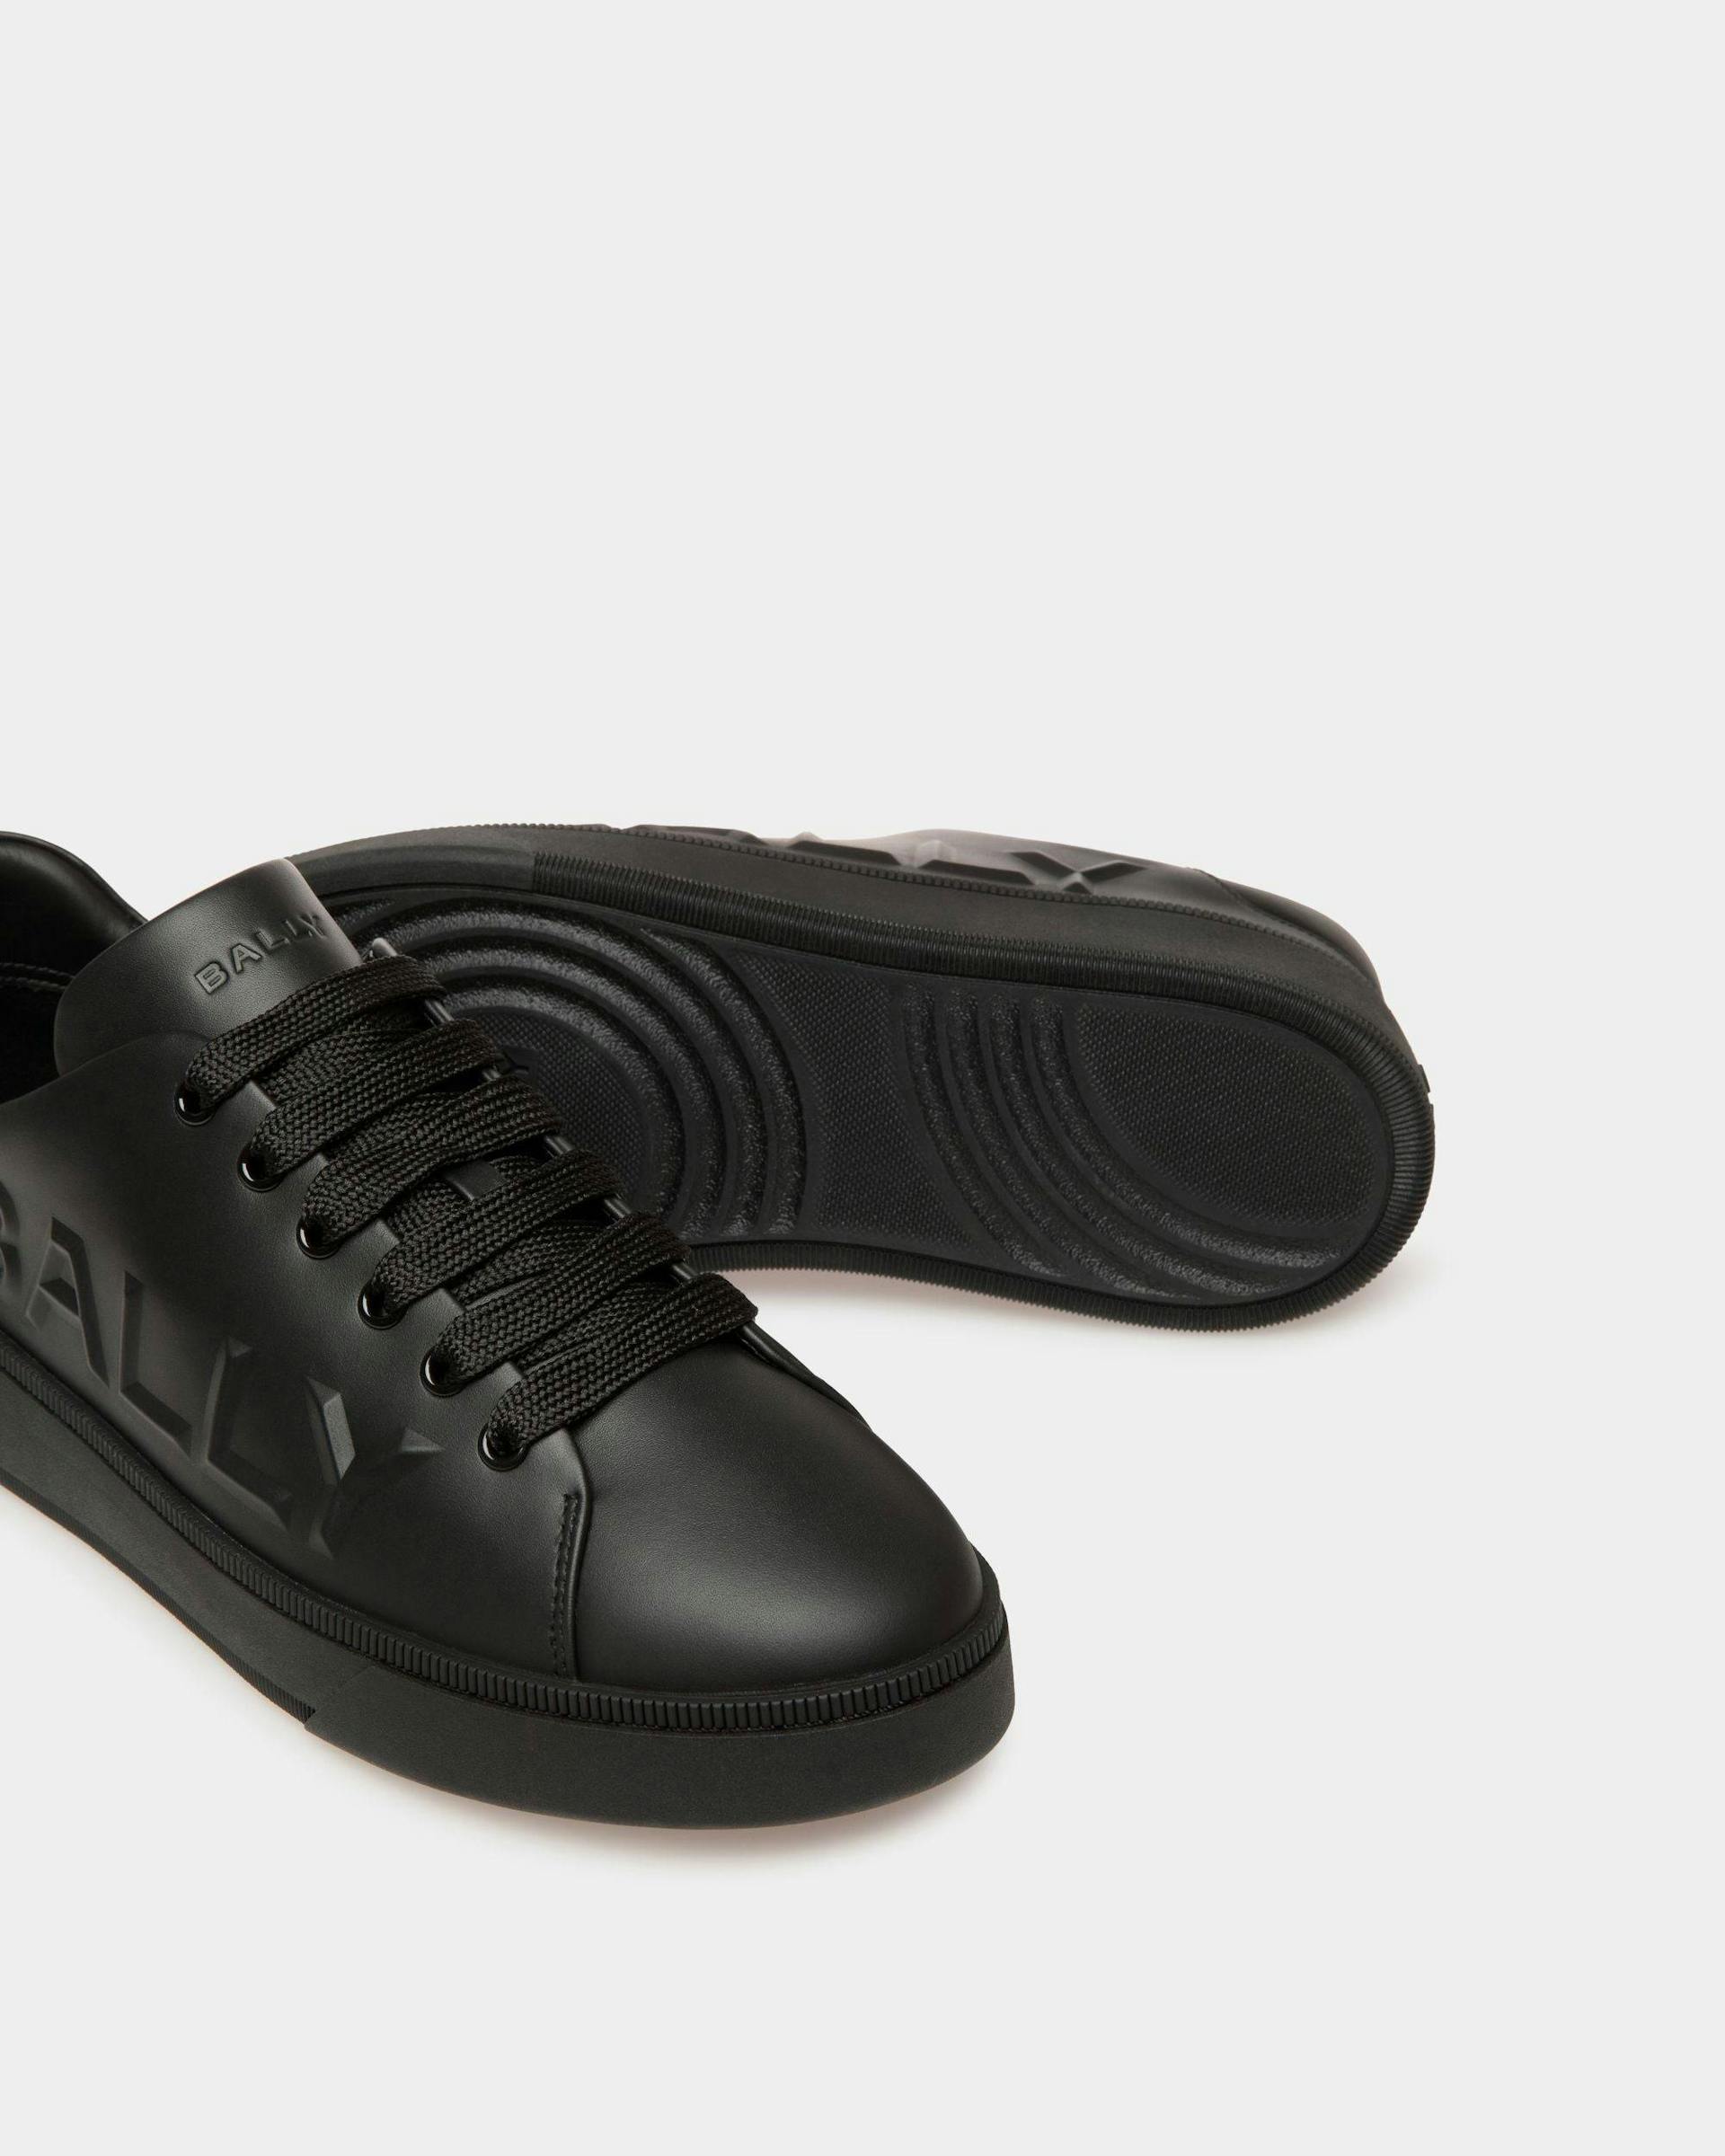 Men's Raise Sneaker in Black Leather | Bally | Still Life Below